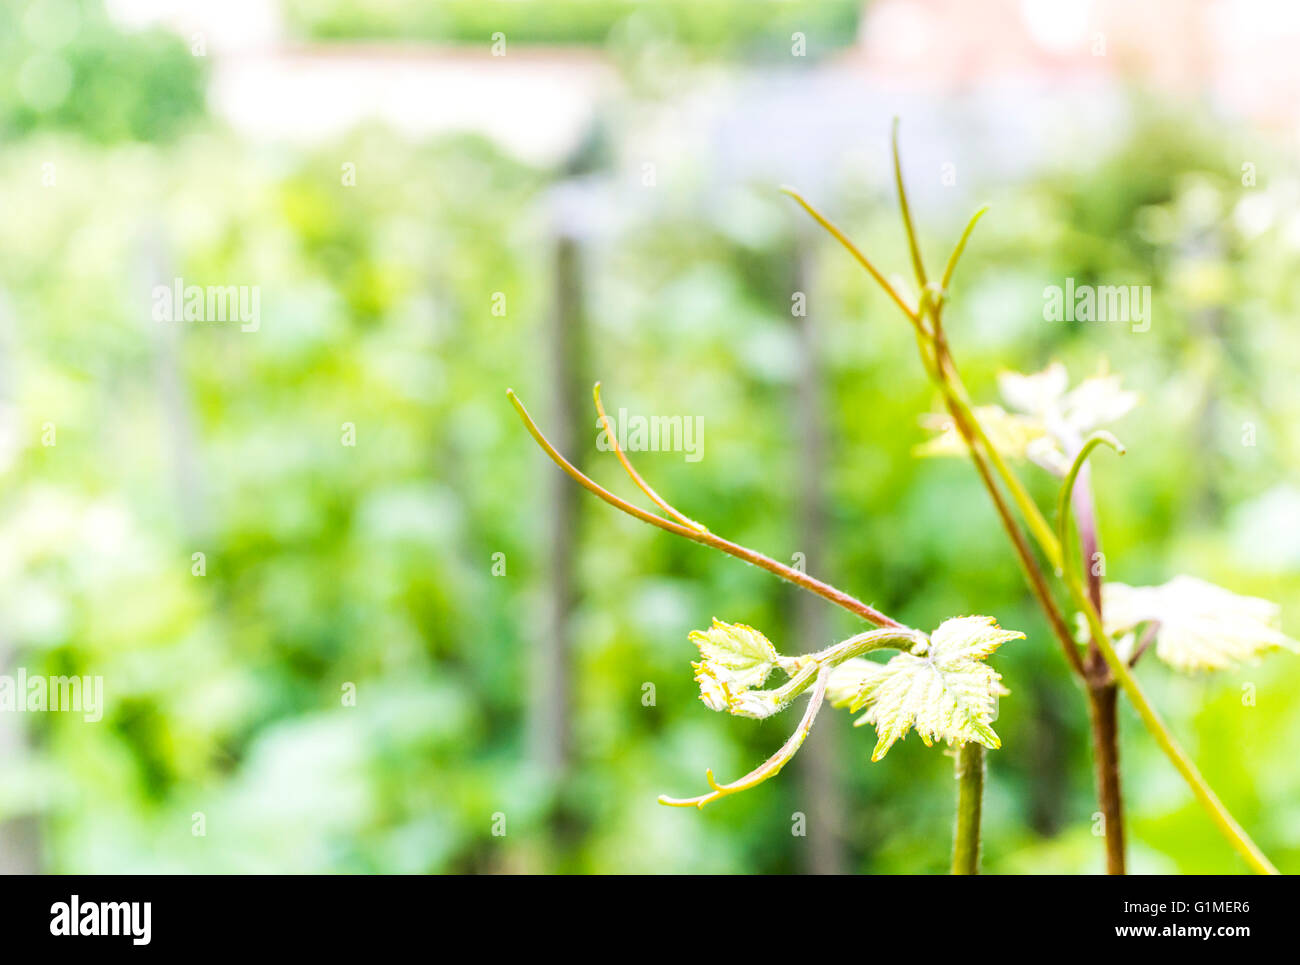 vineyard in spring Stock Photo